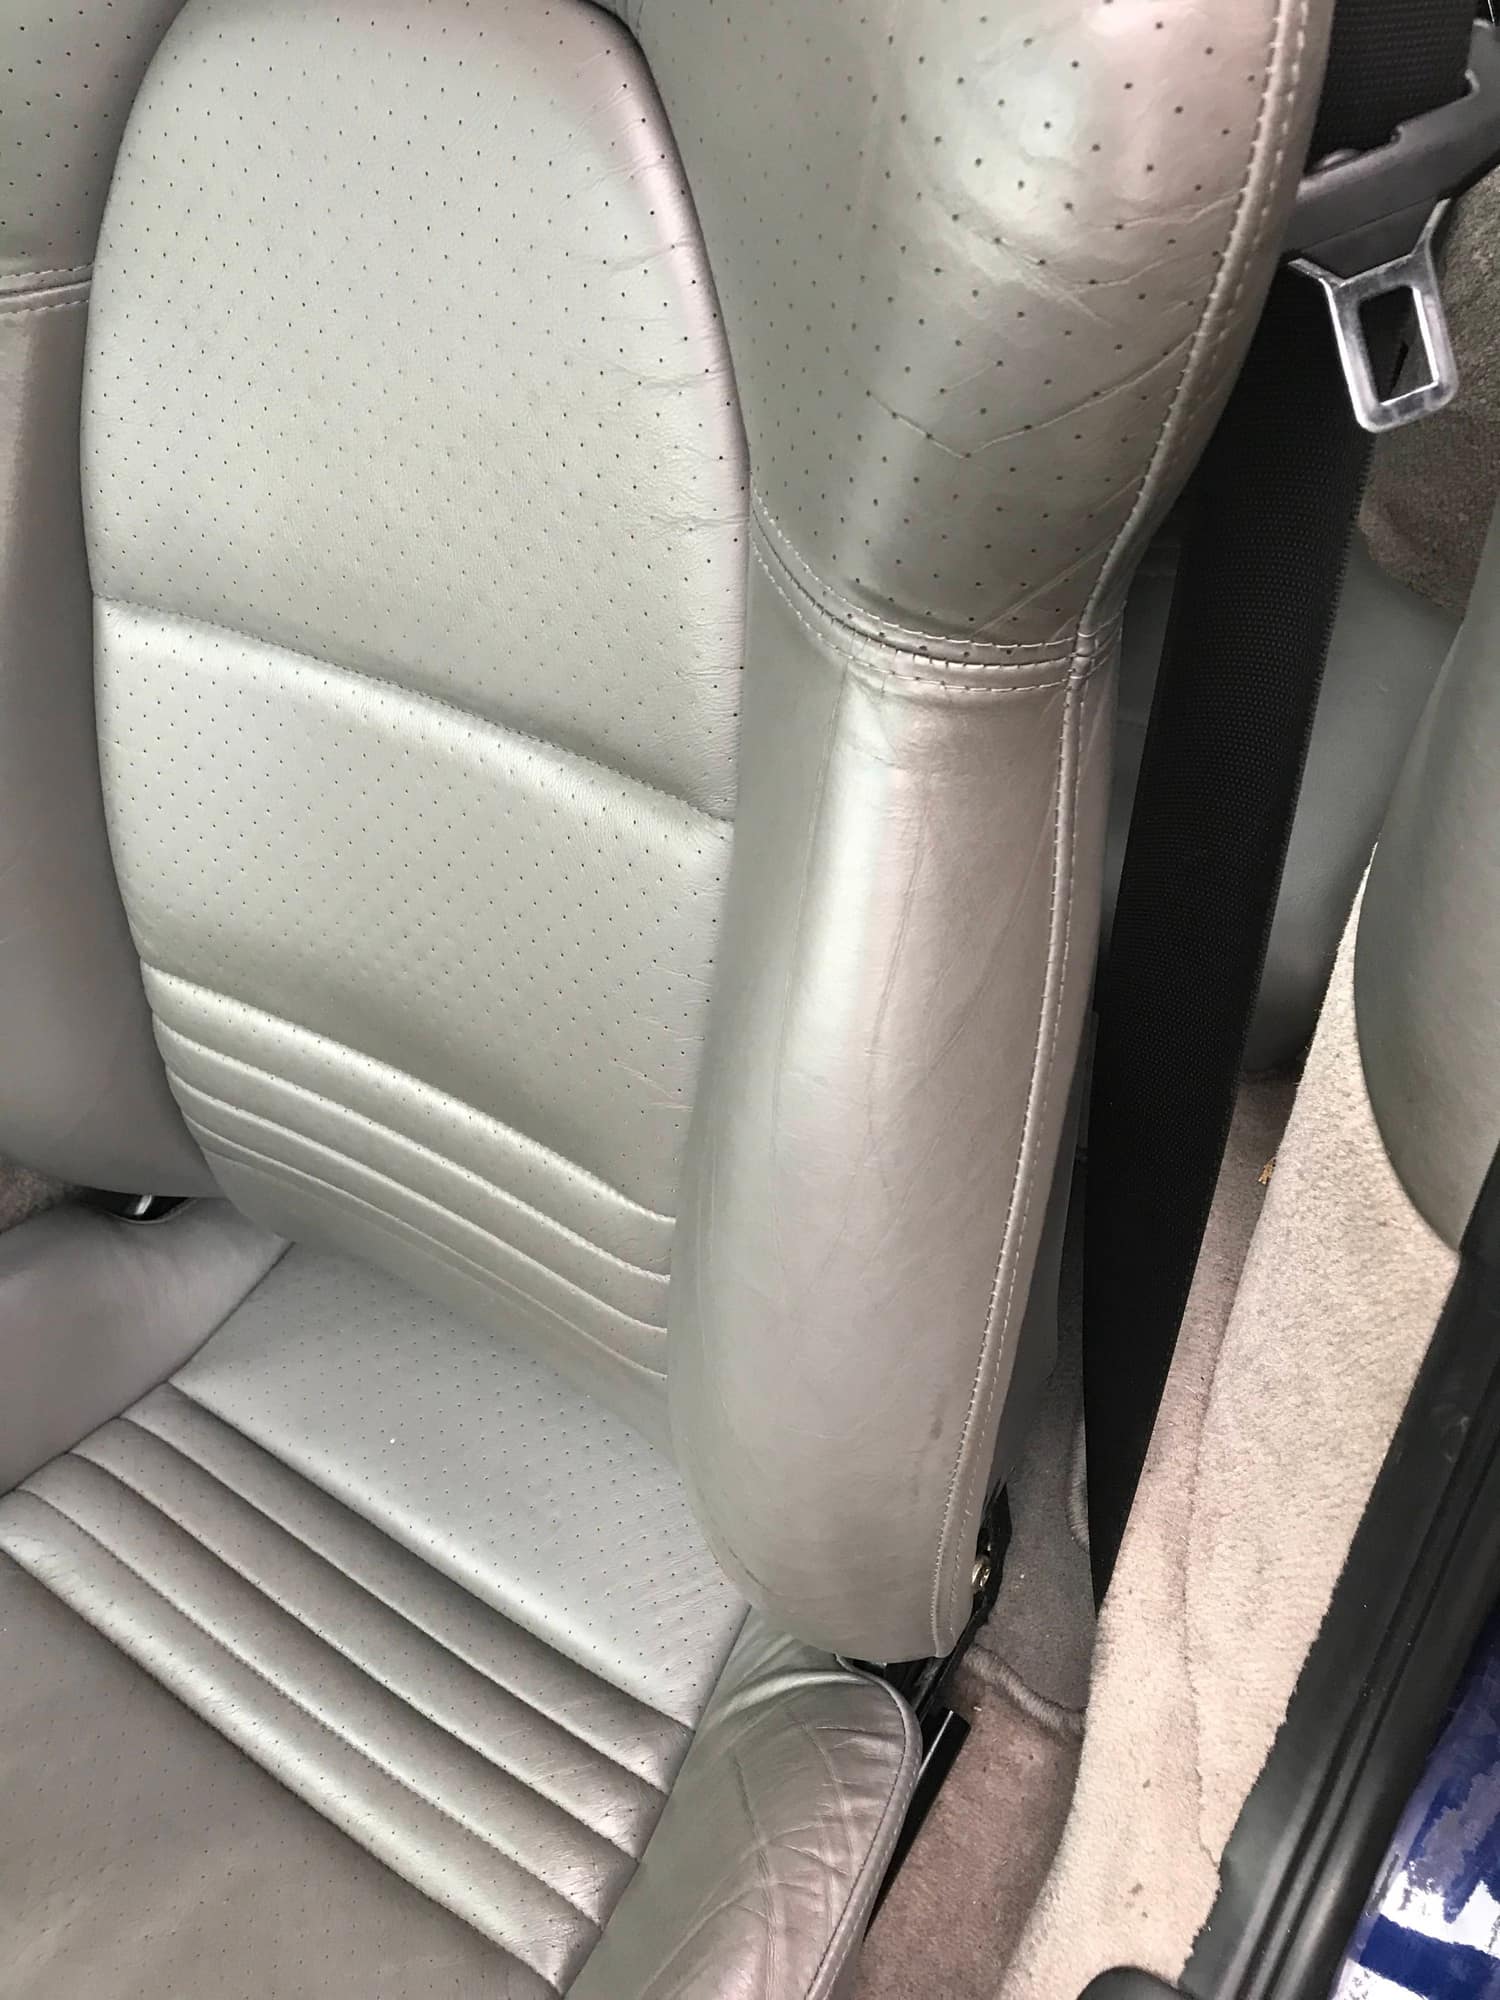 996 Graphite Gray Sports Seats - Leather - Rennlist - Porsche ...